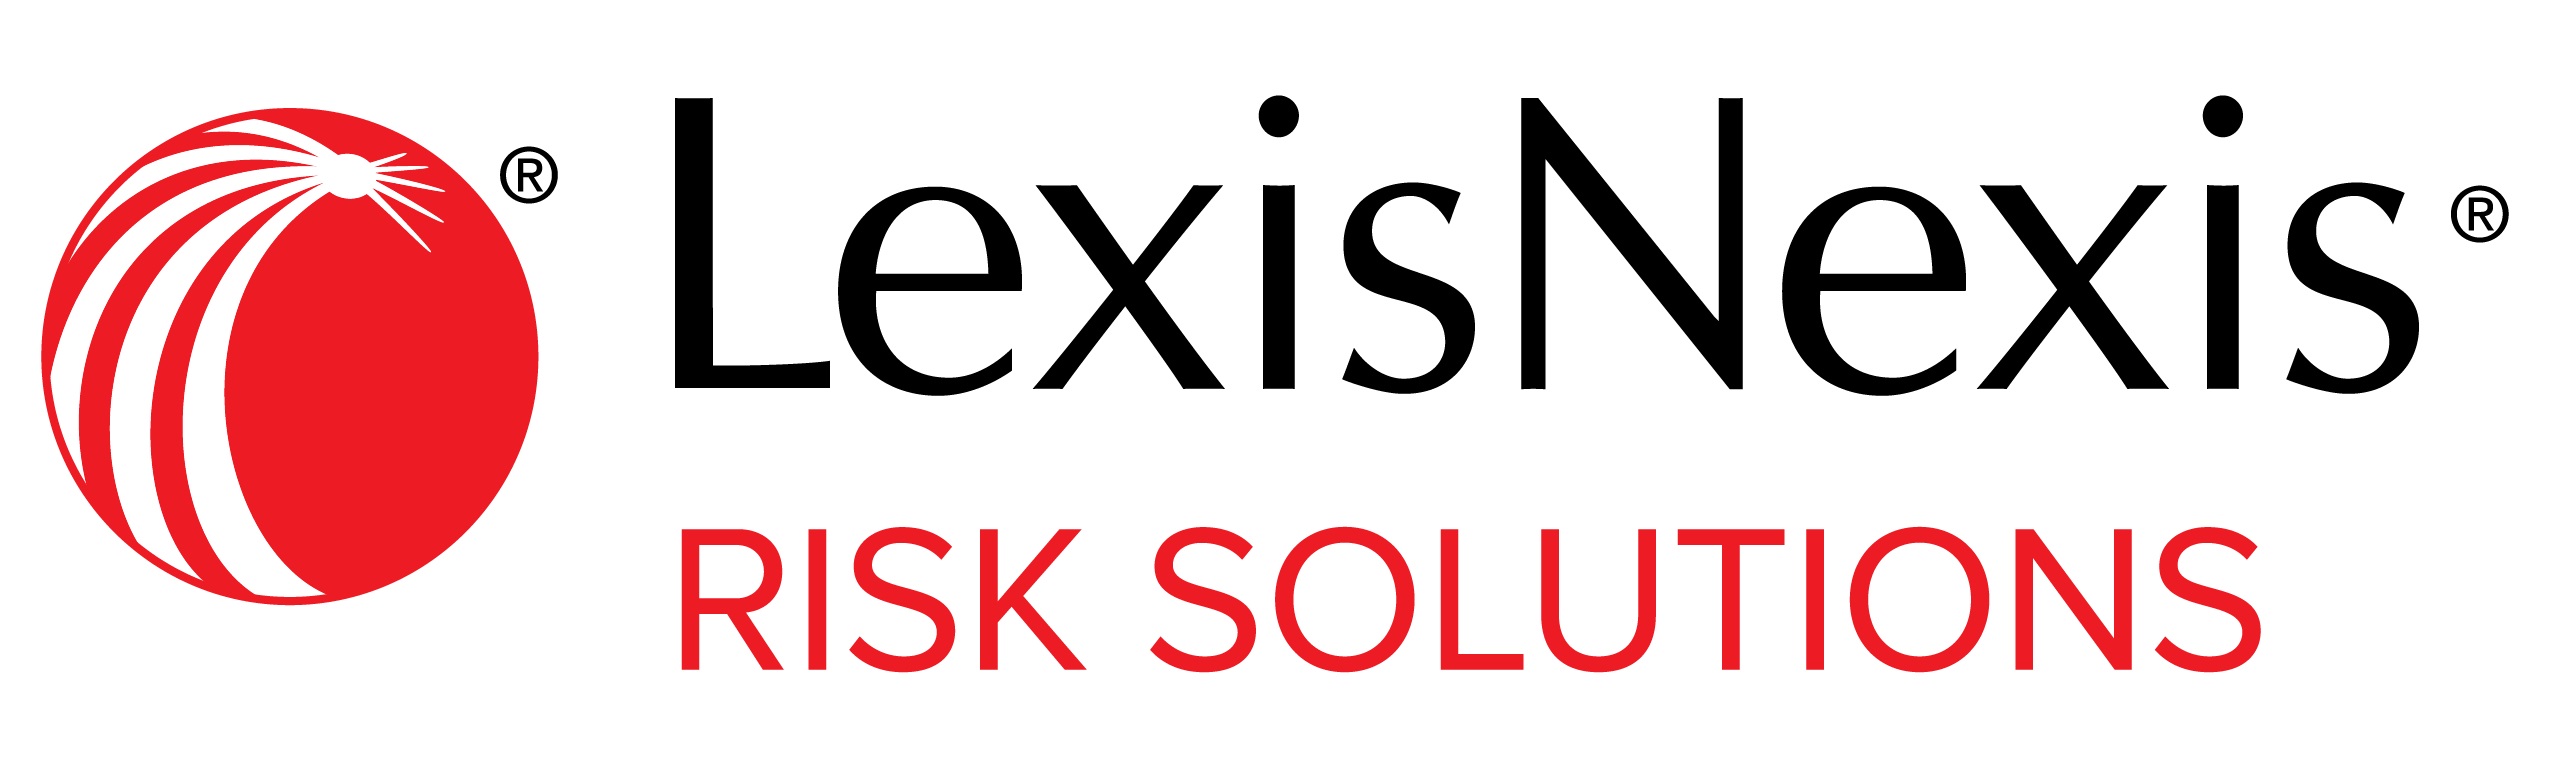 LexisNexis.com